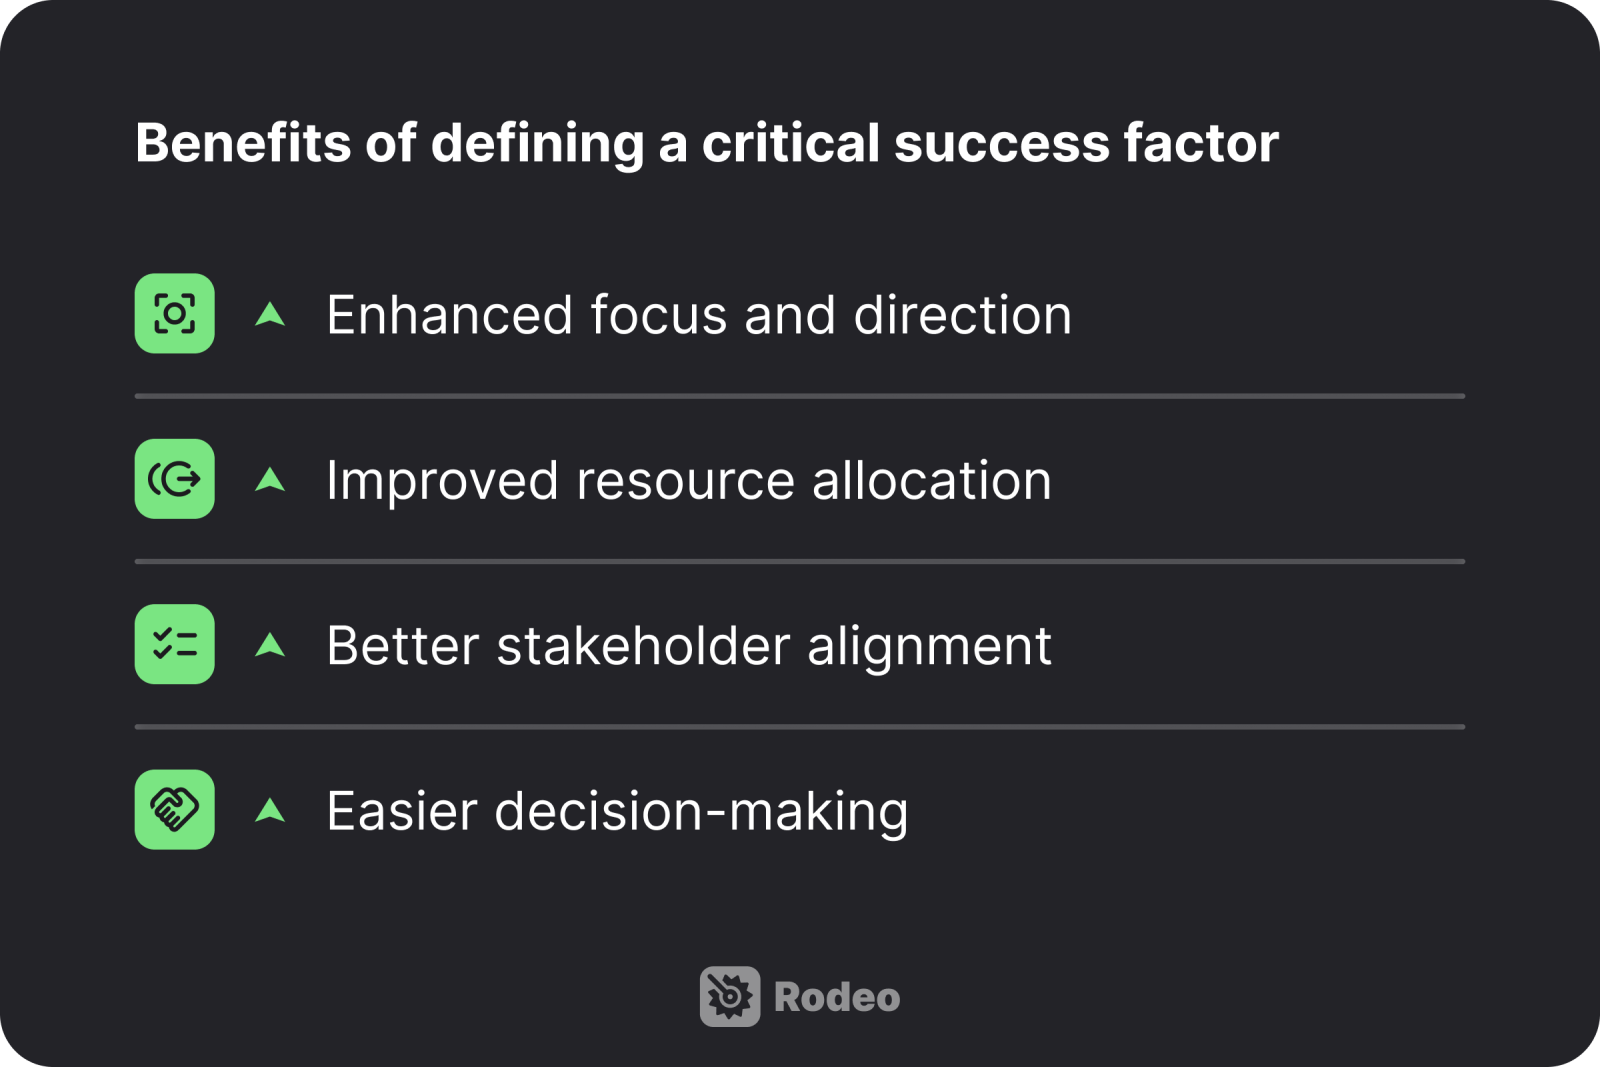 Benefits of defining critical success factors